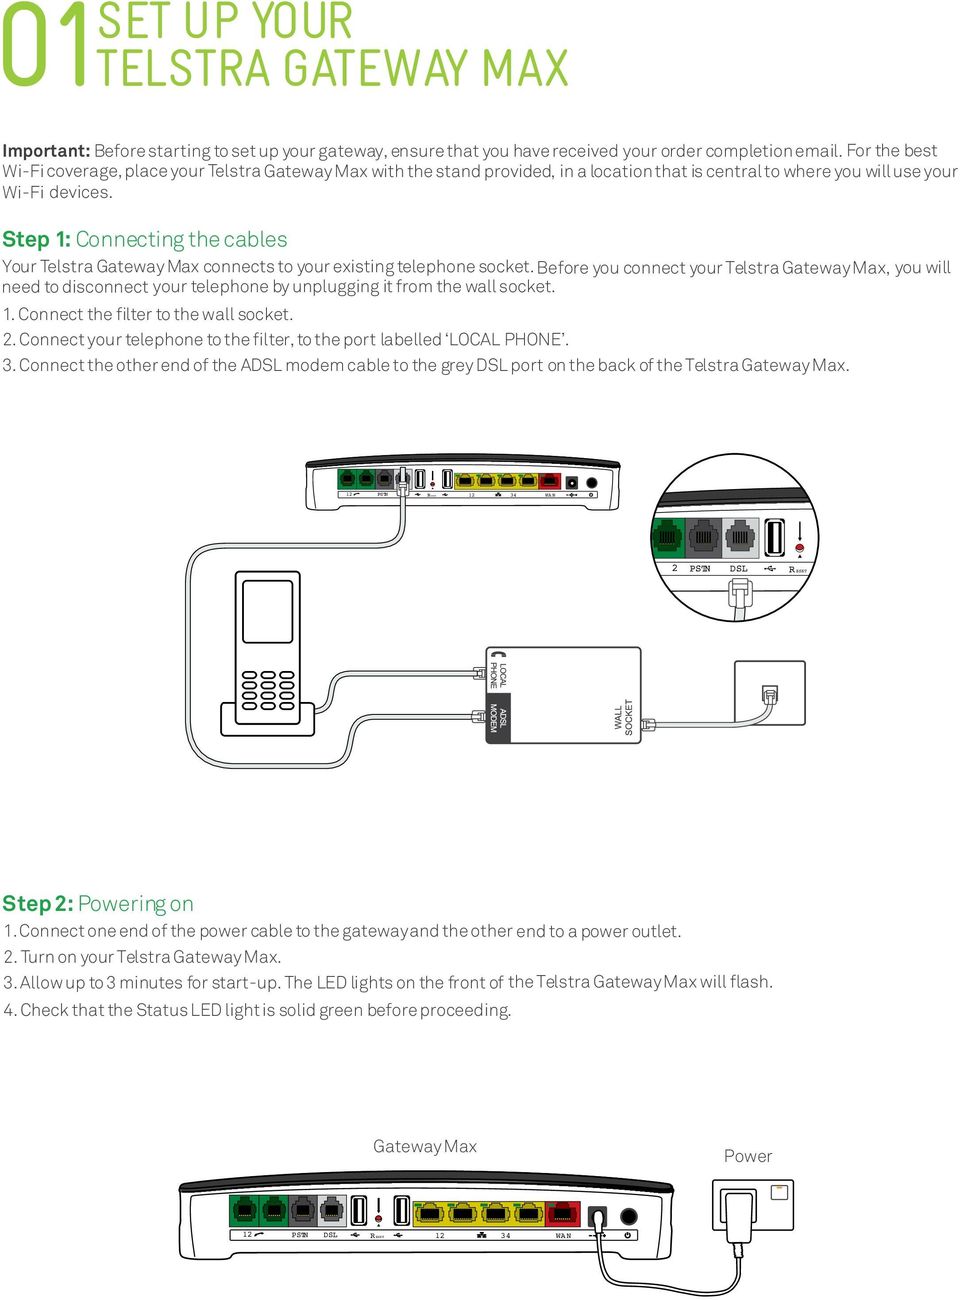 centurylink wiring diagram